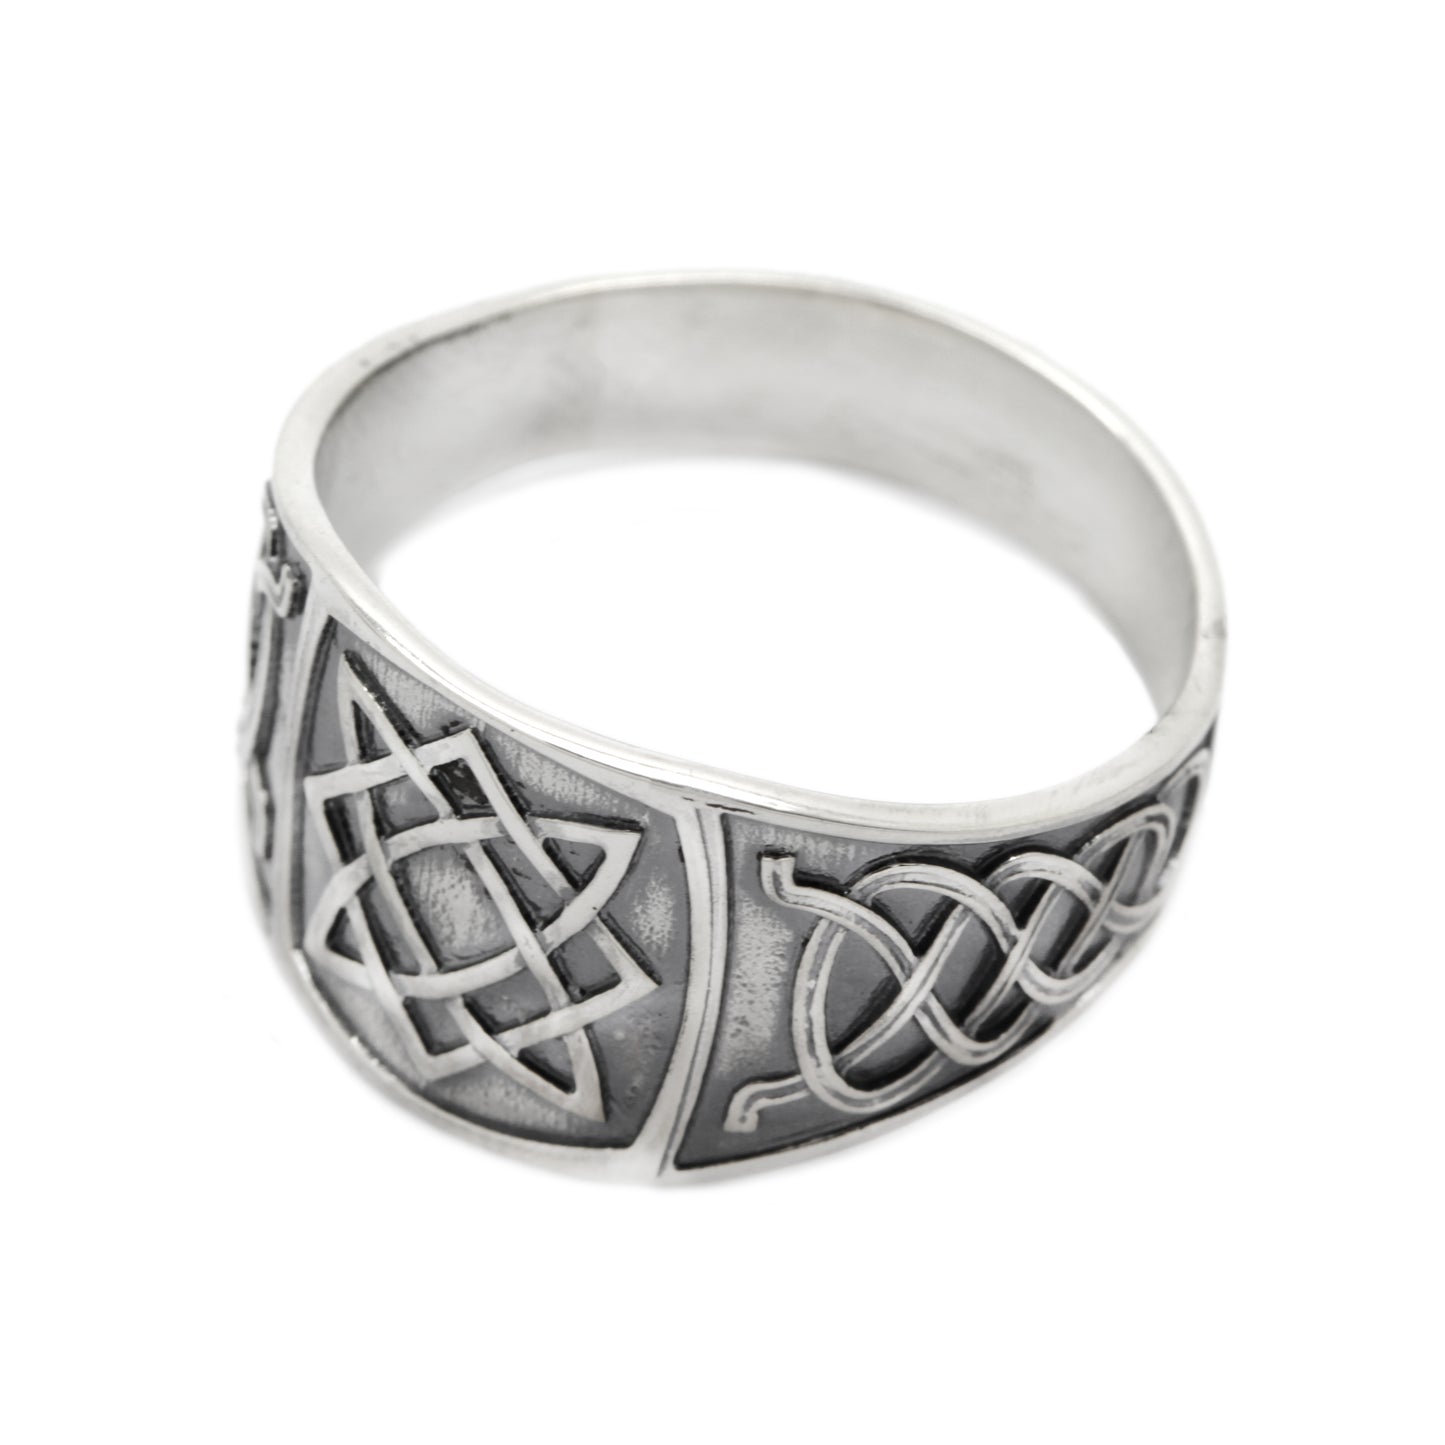 Svarog Square Slovanský symbol Etnický ornament Pánský prsten Mincovní stříbro 925